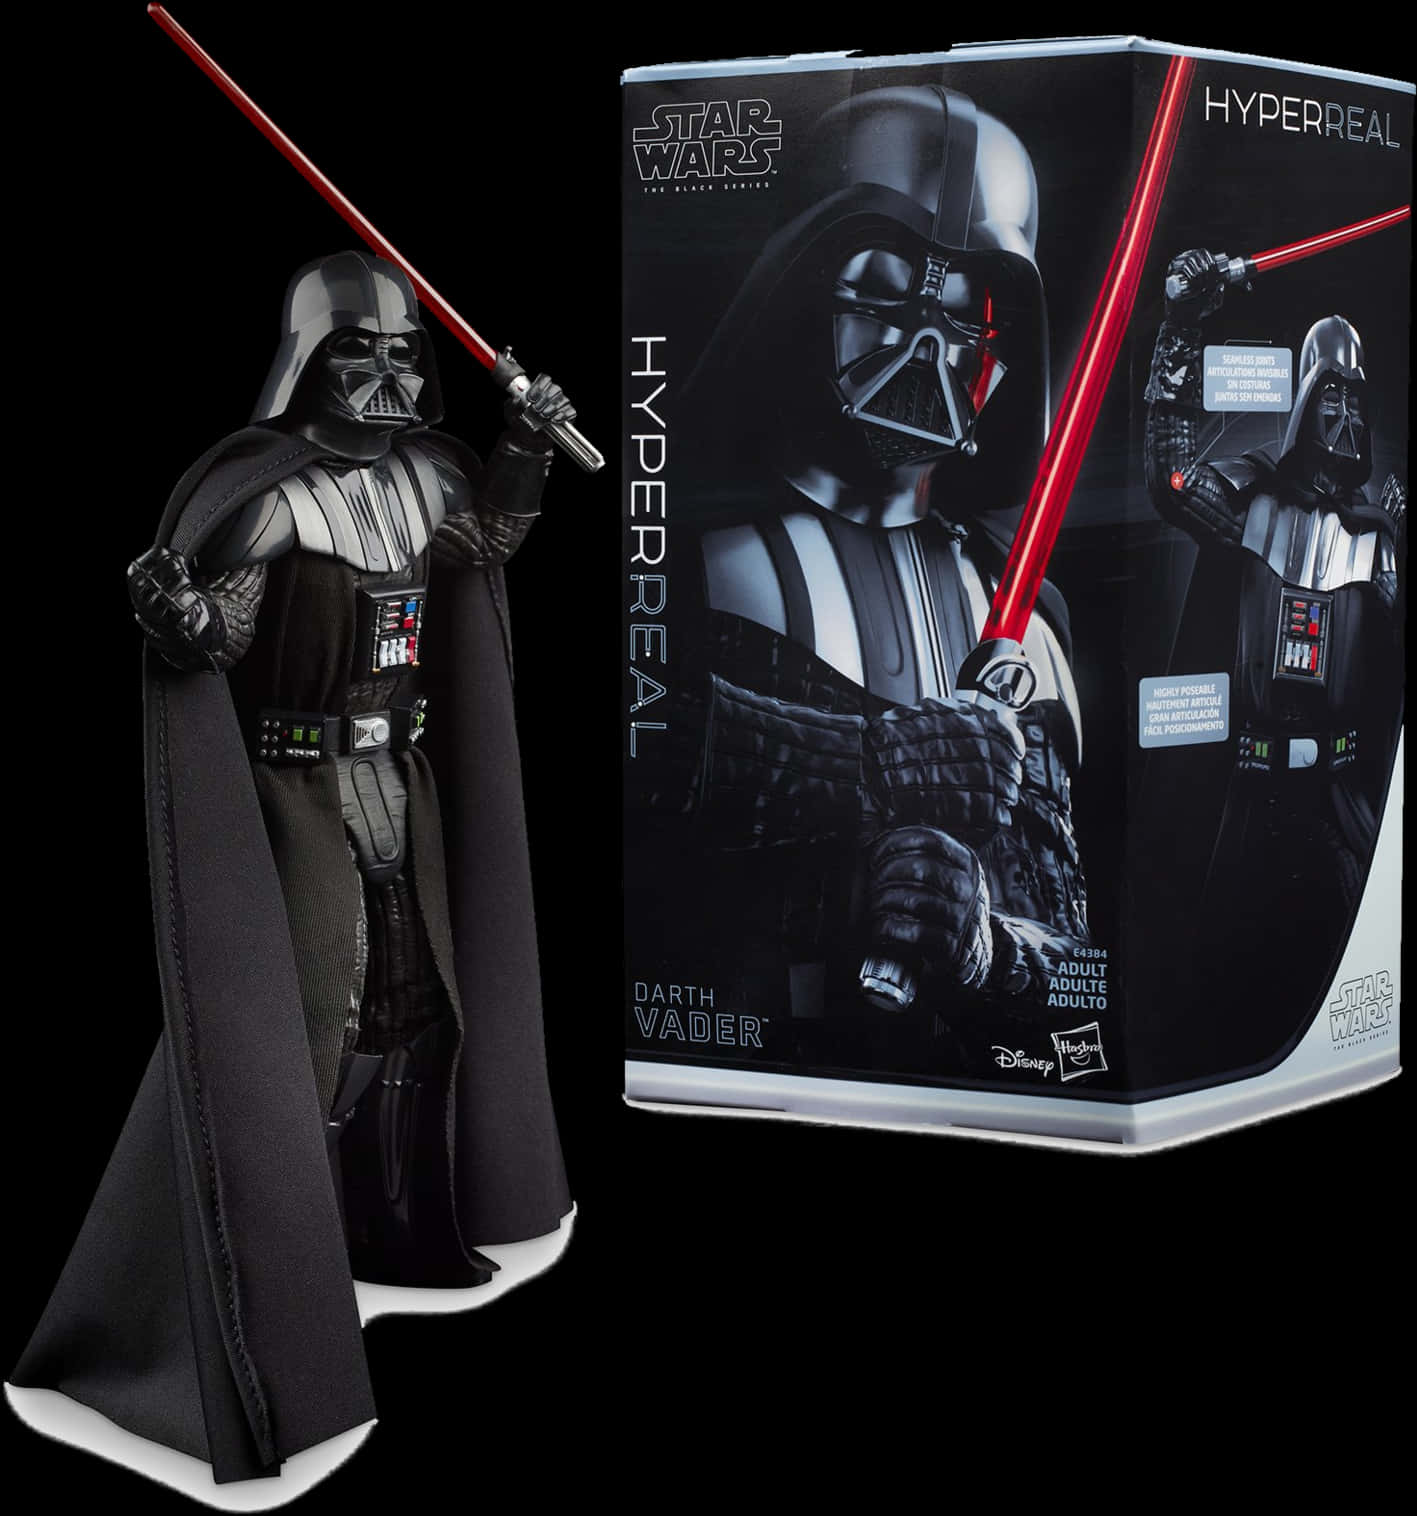 Darth Vader Hyperreal Figure Packaging